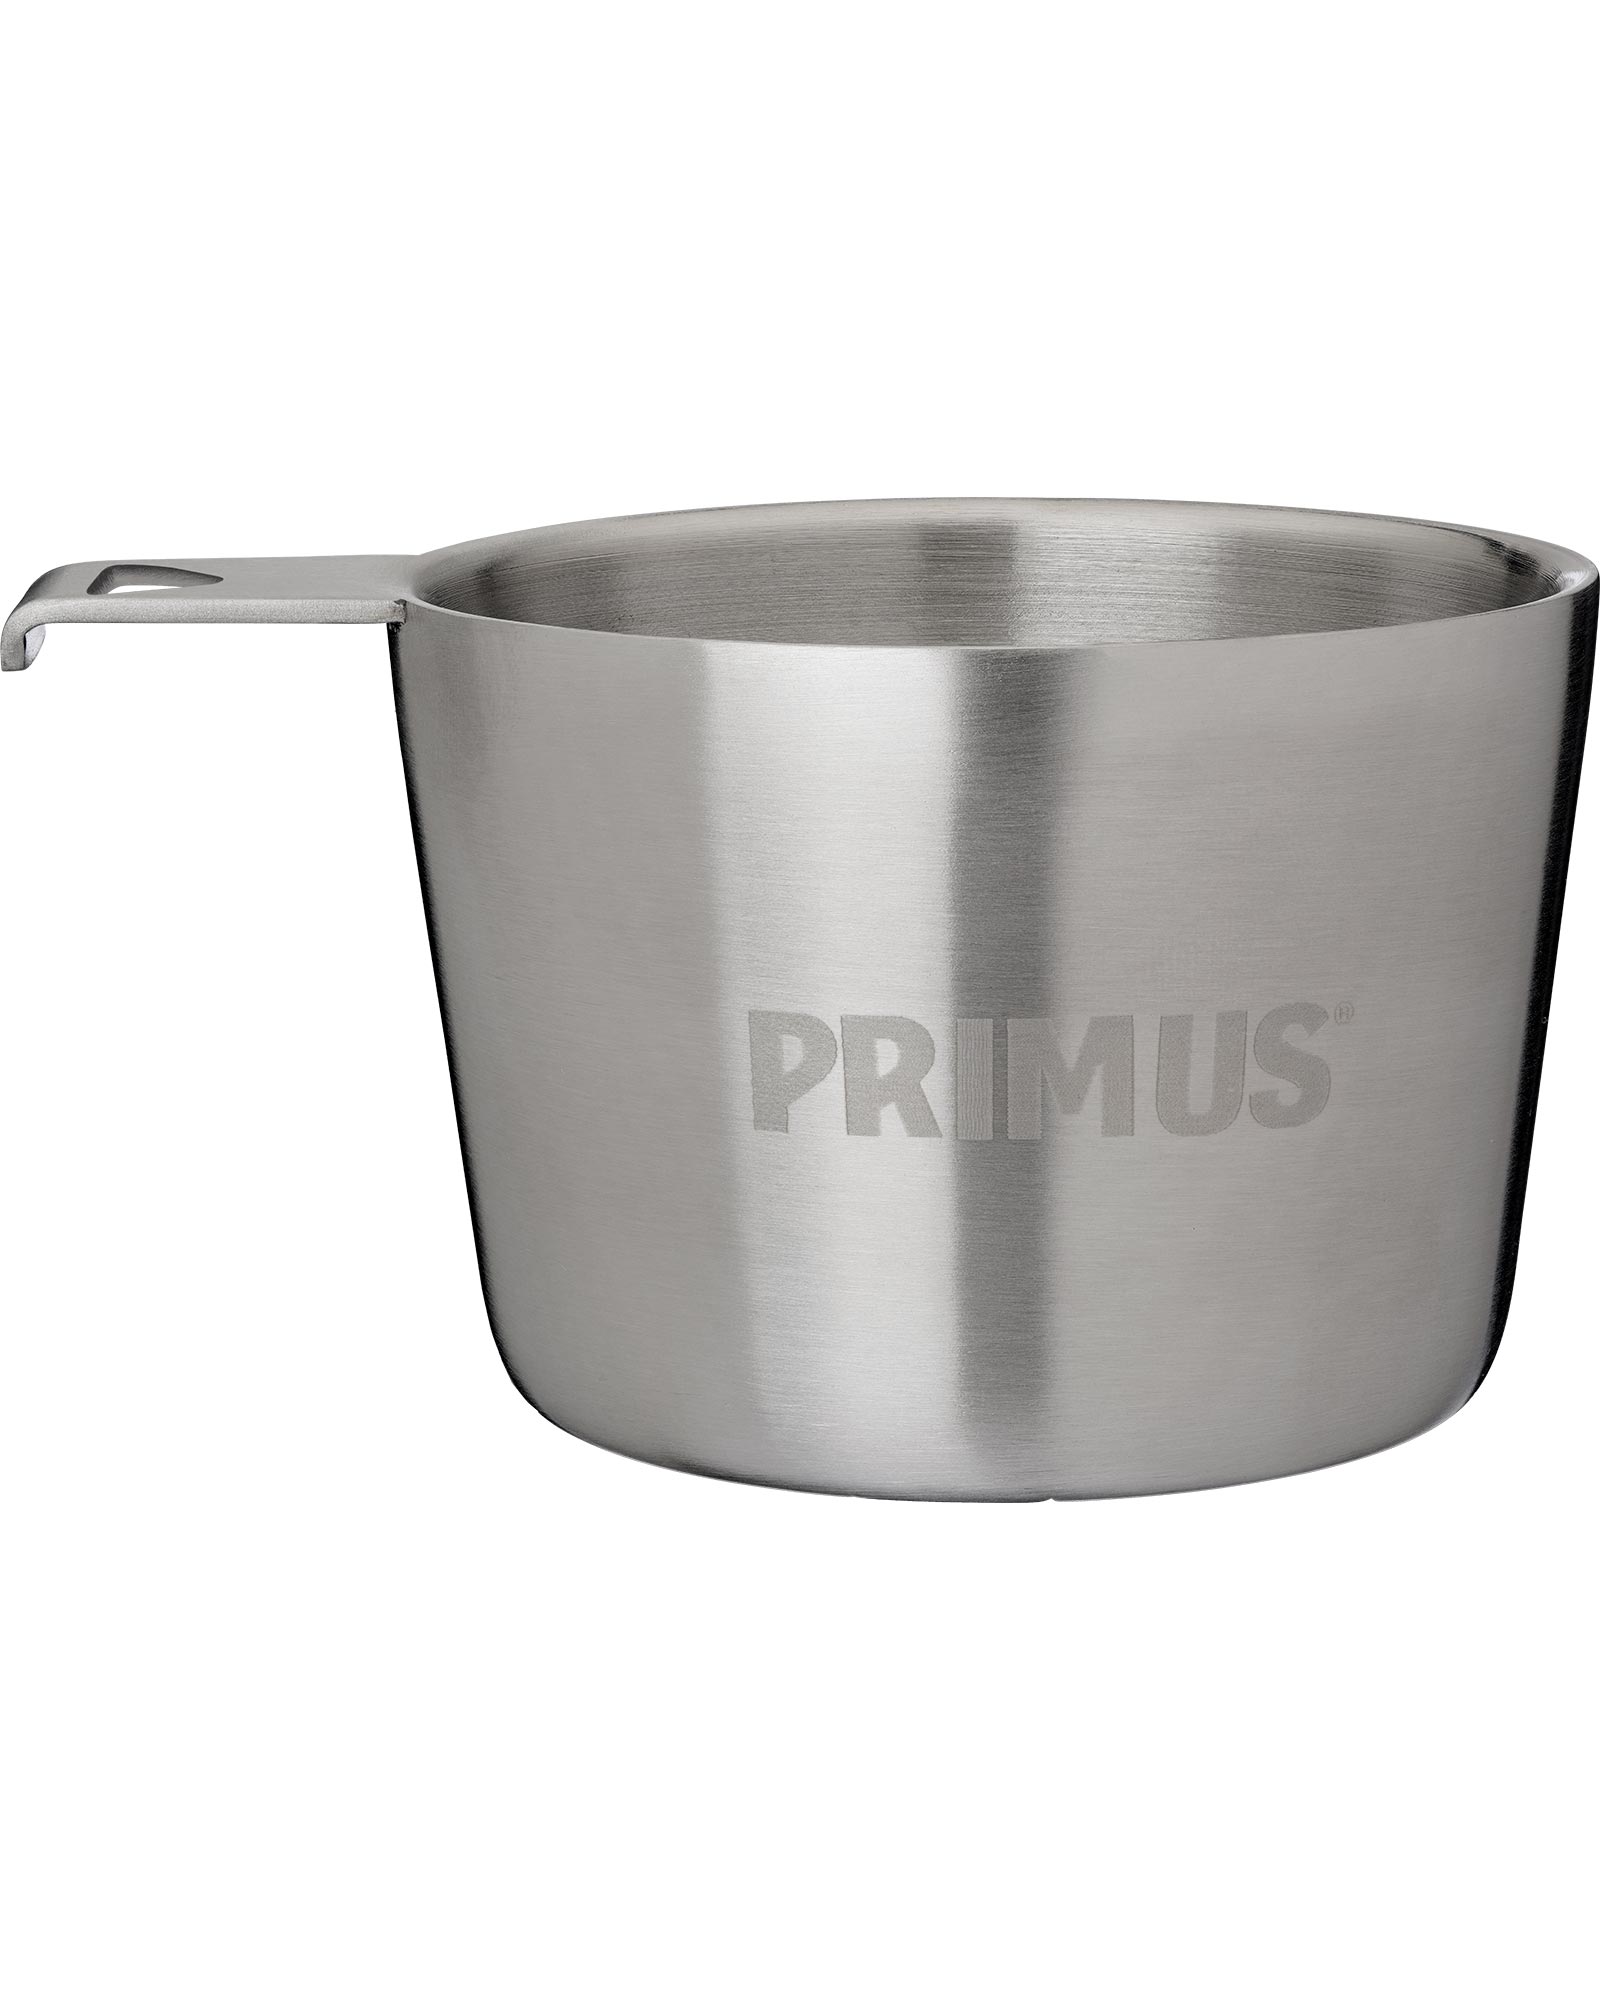 Primus Kasa Stainless Steel Mug